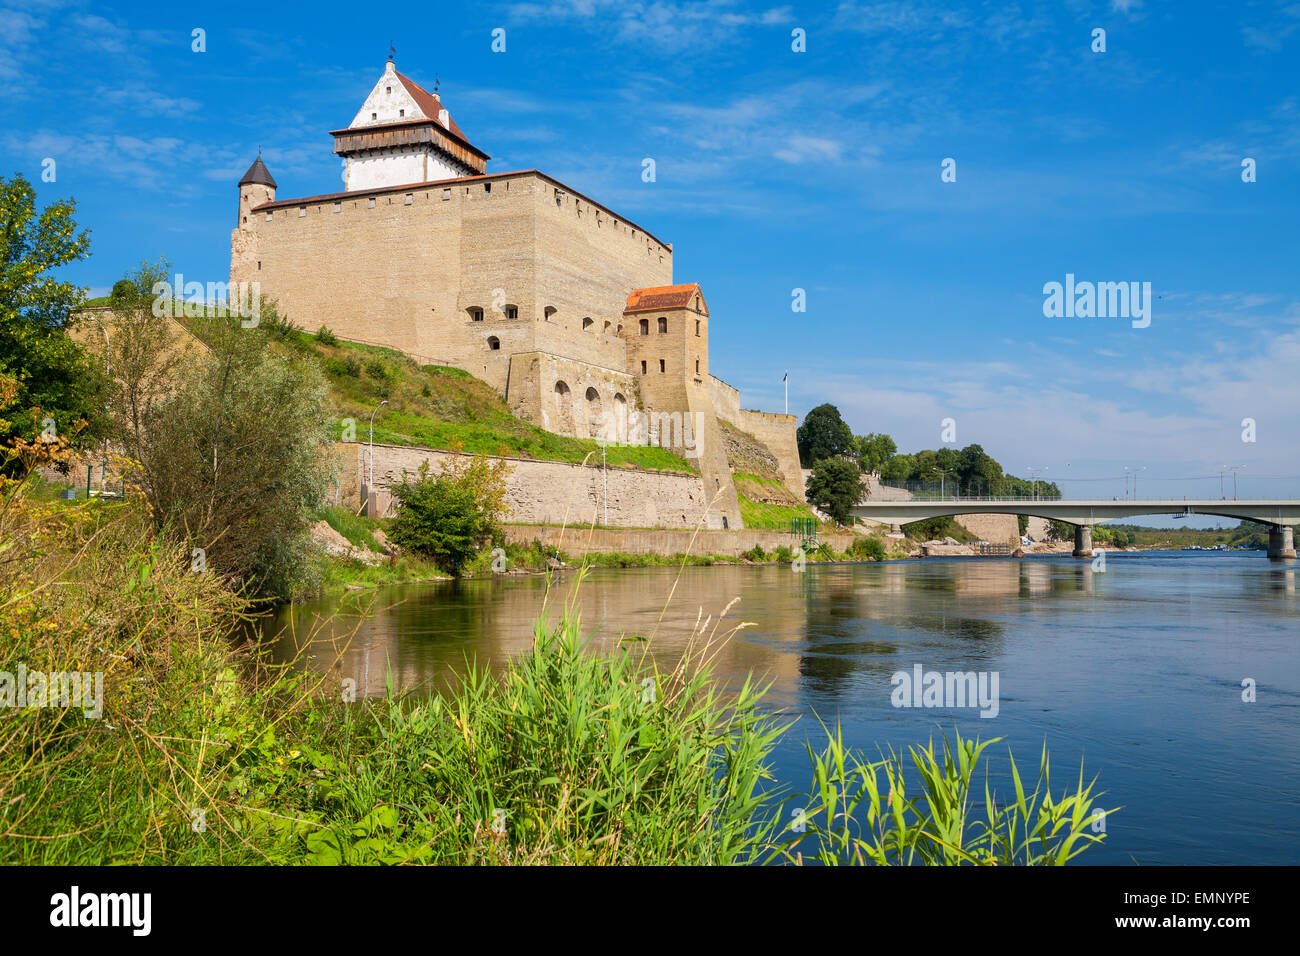 La forteresse de Narva. L'Estonie, de l'UNION EUROPÉENNE Banque D'Images